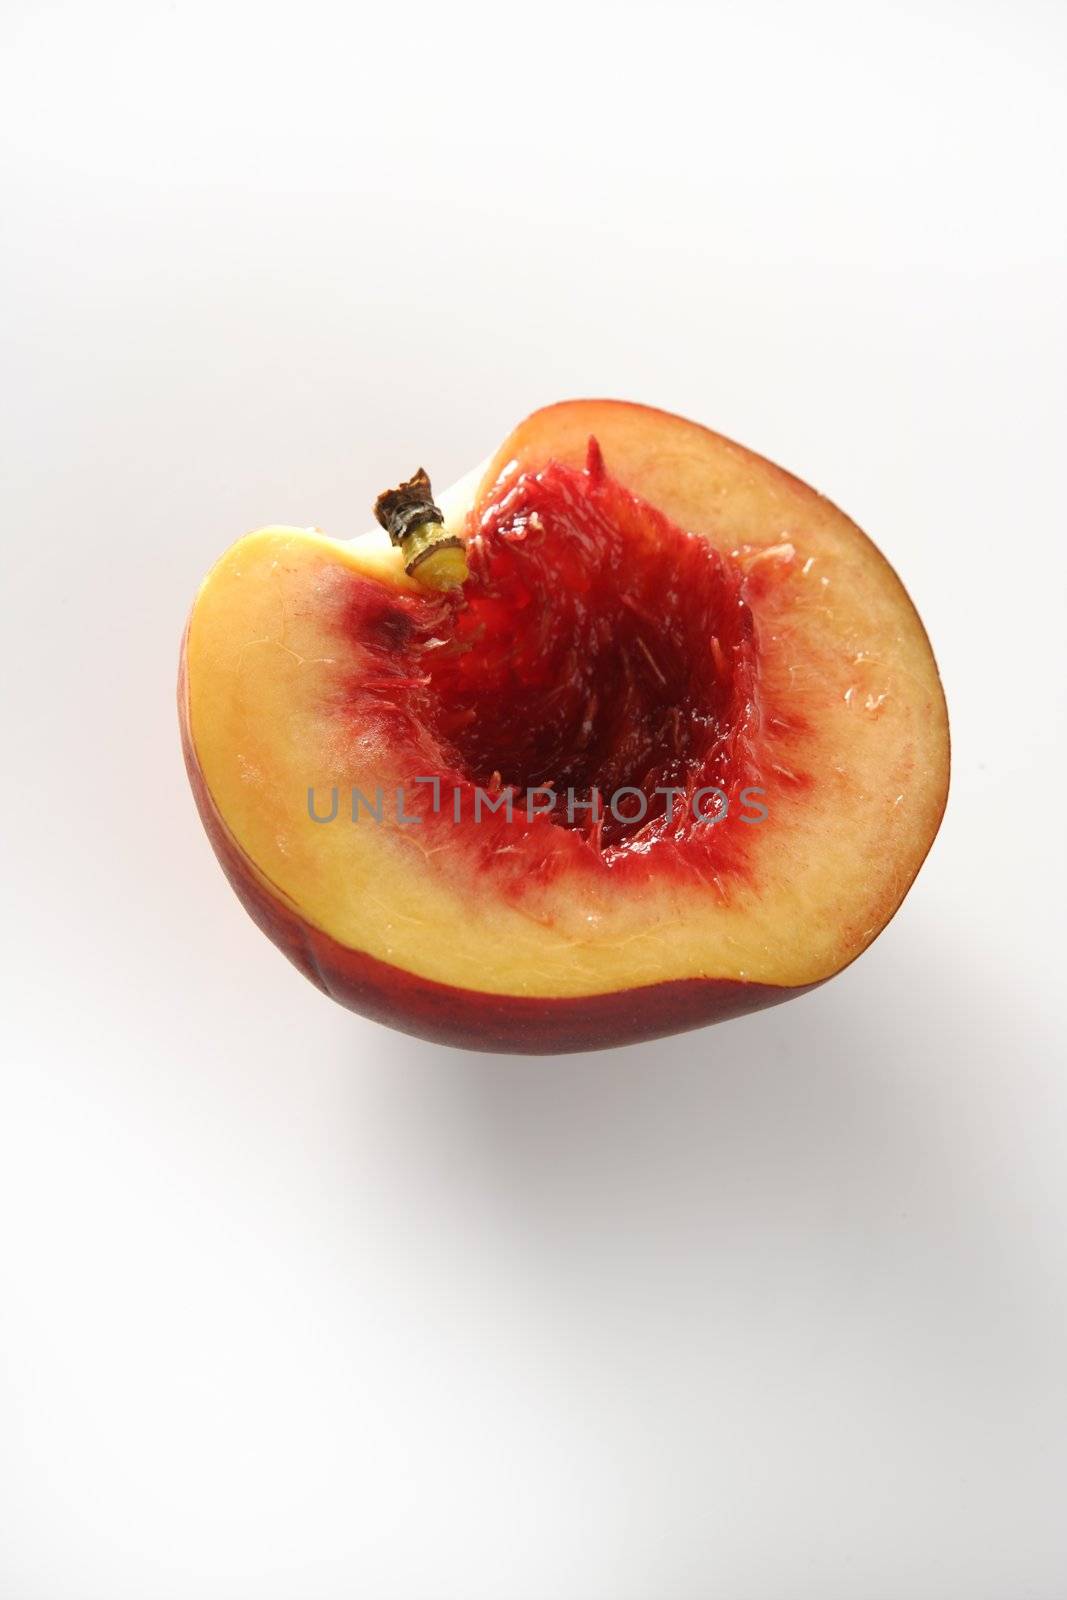 Bloody inside, half cut peach by lunamarina